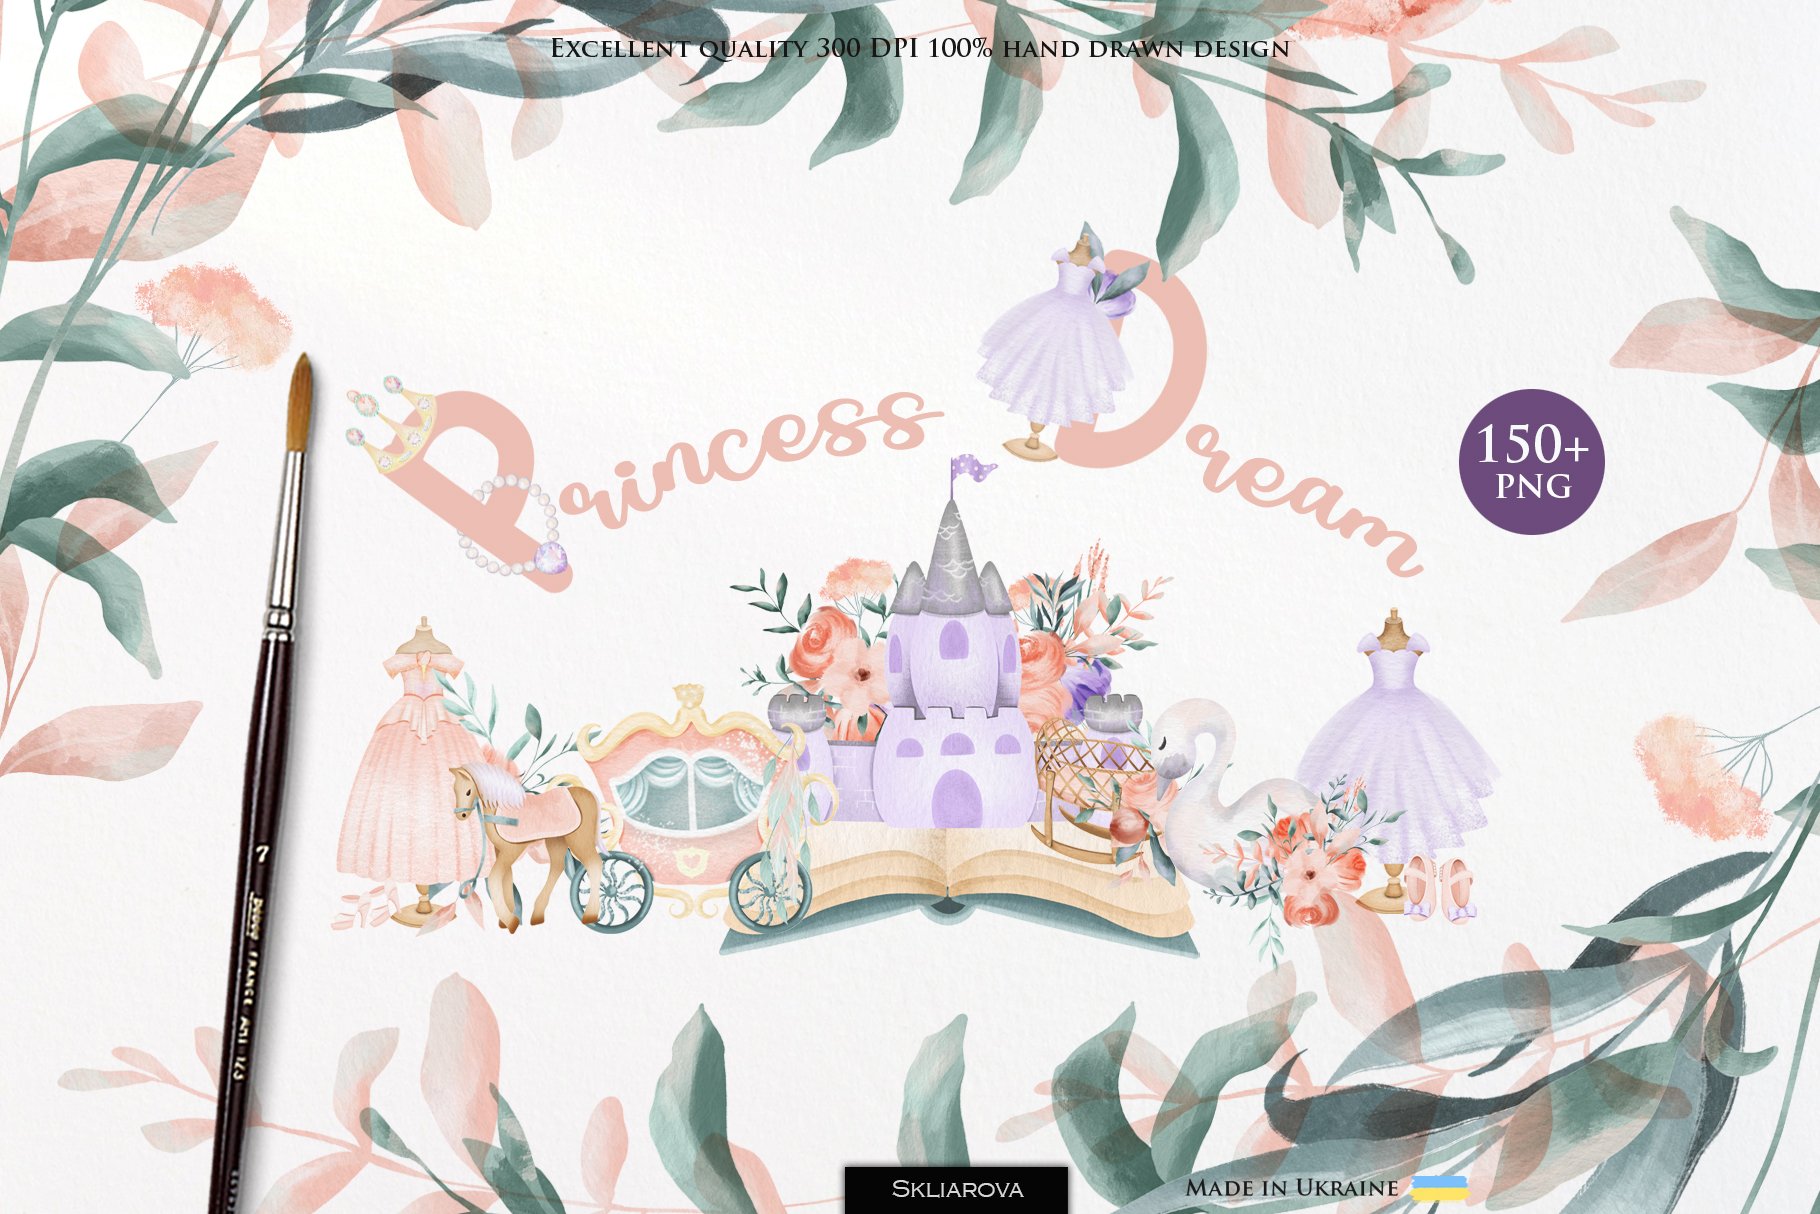 Princess dream cover image.